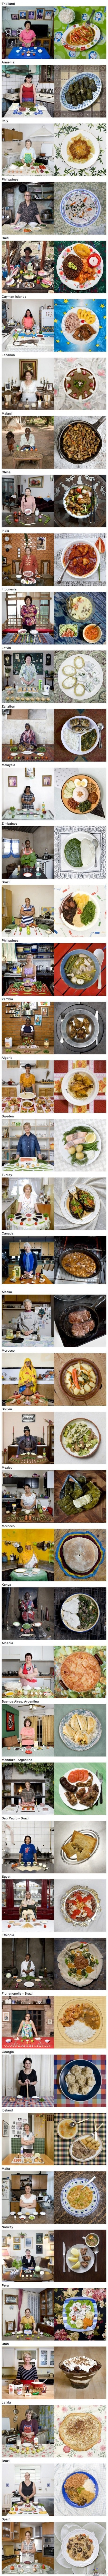 Mummojen tekemää ruokaa ympäri maailmaa